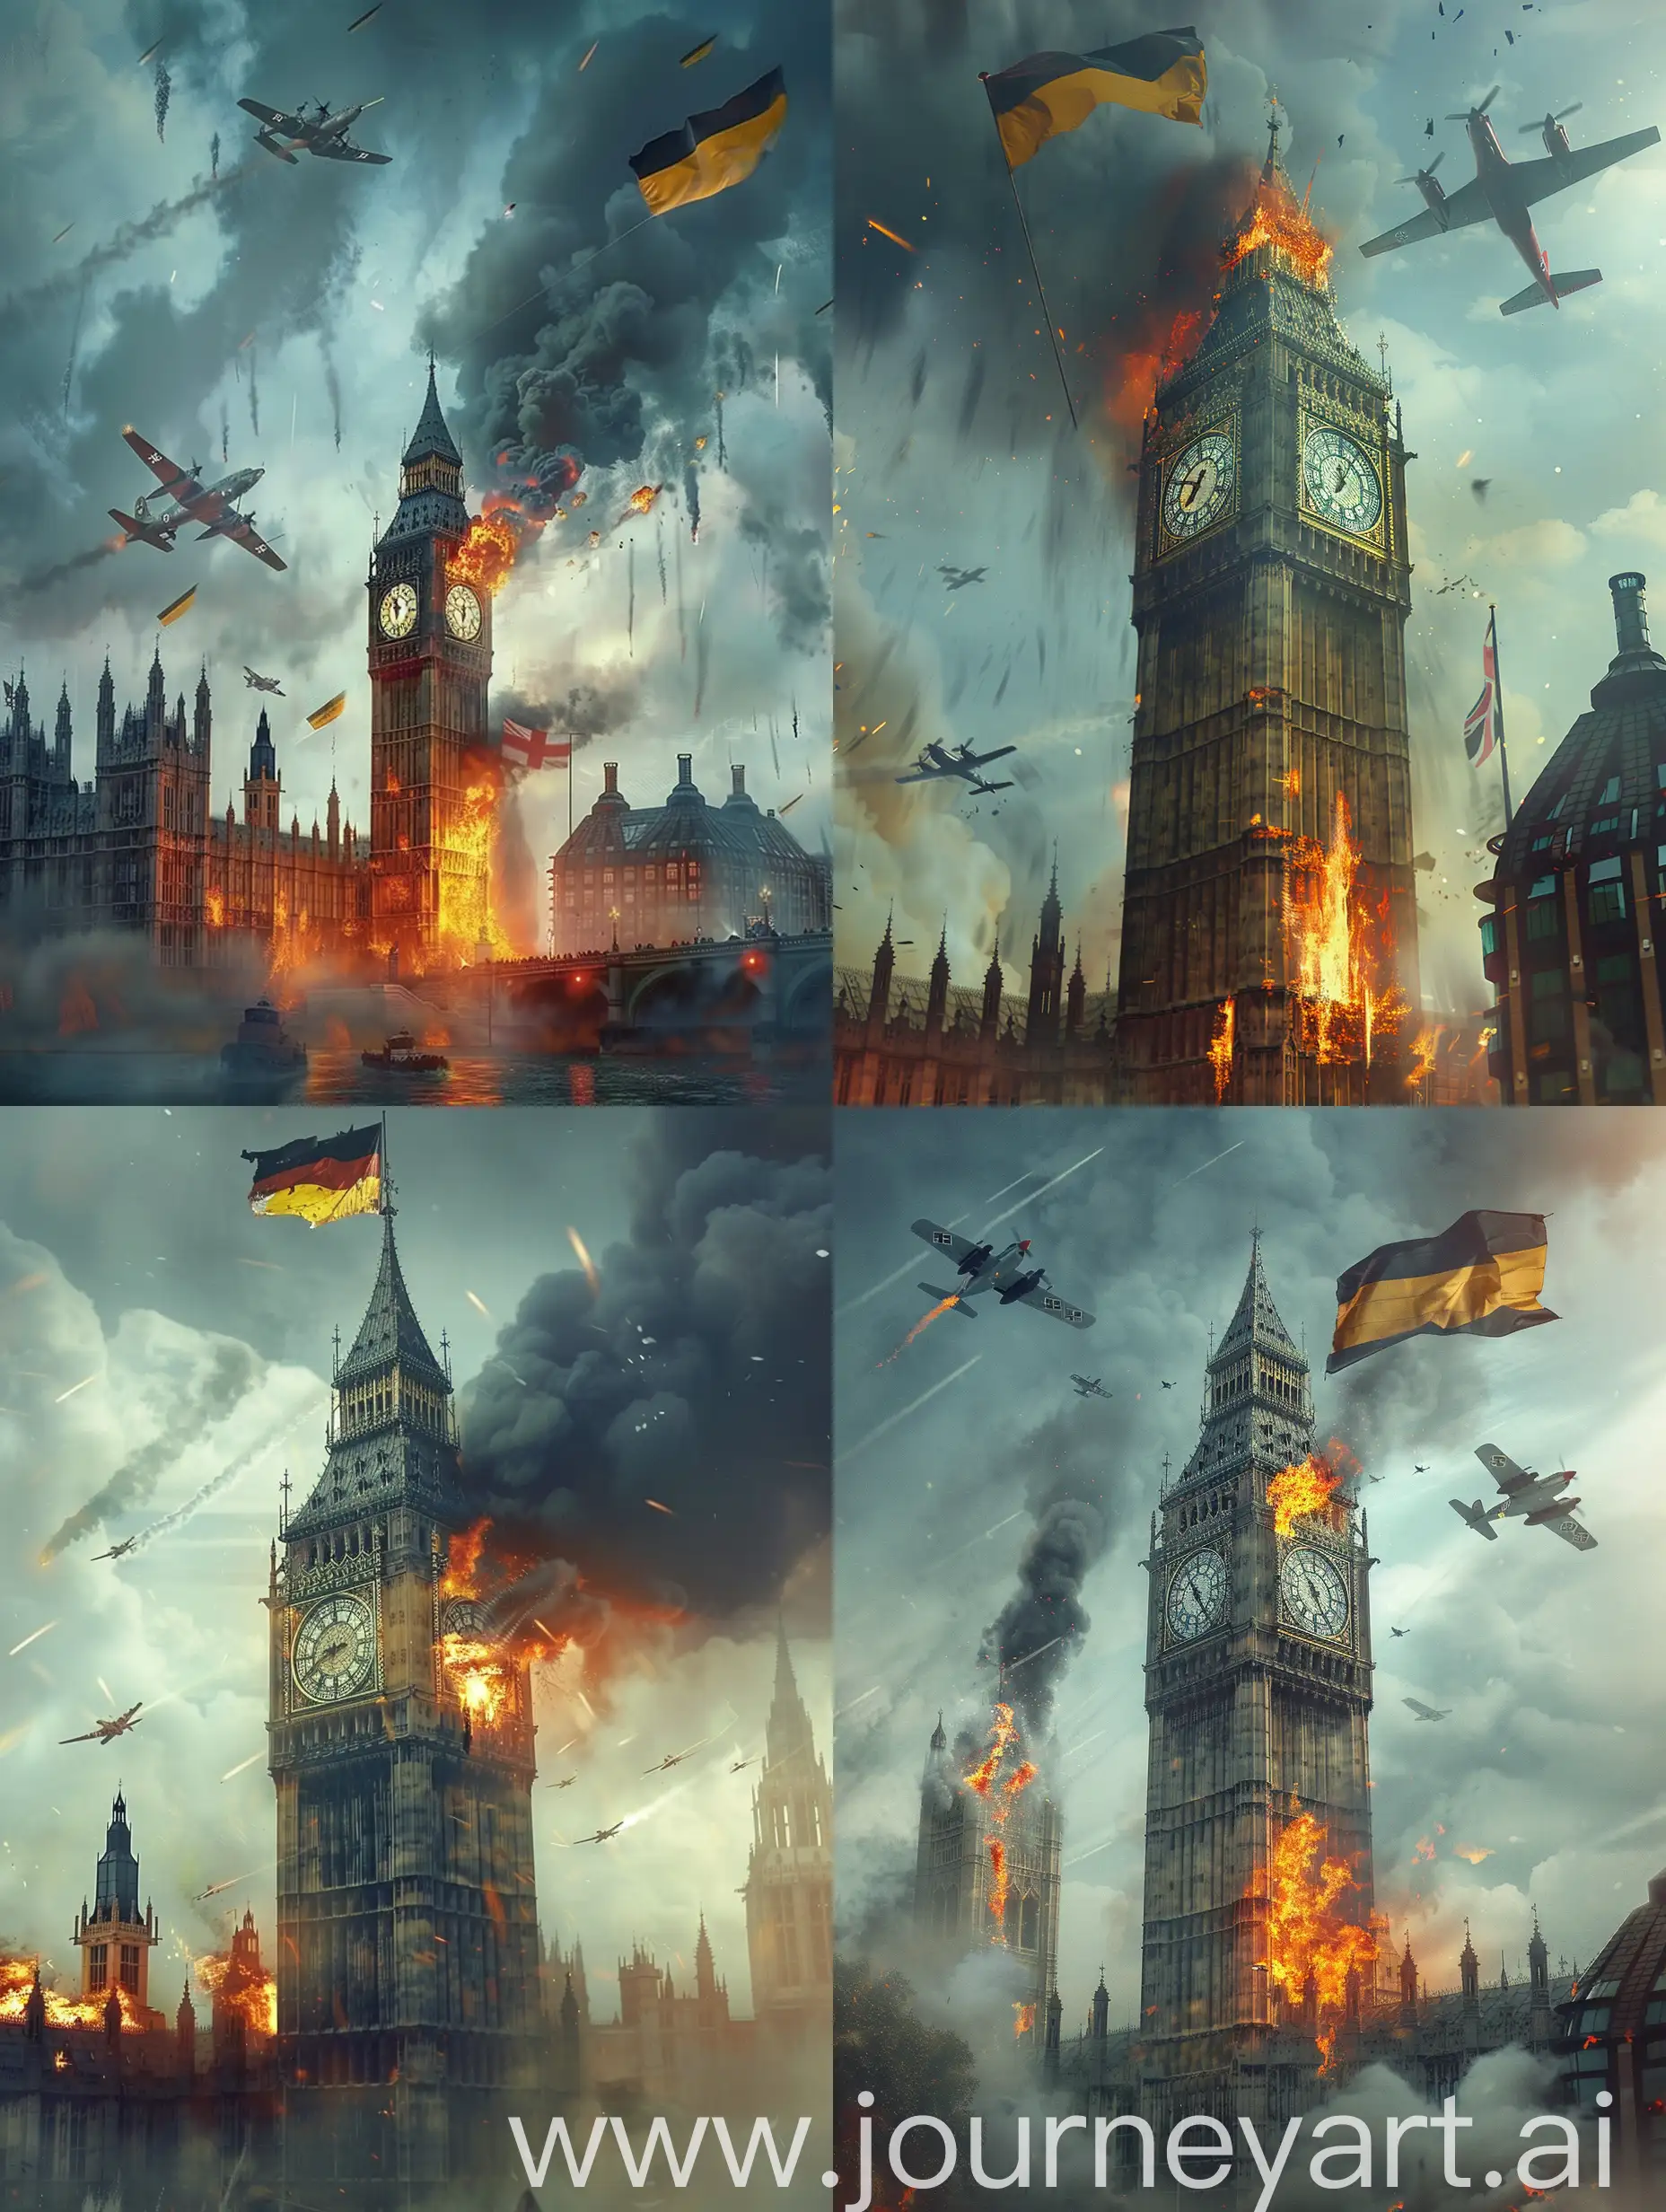 Лондон в огне, Бигбен горит, летают военные самолеты, дым, пасмурно, на Бигбене Флаг Германии